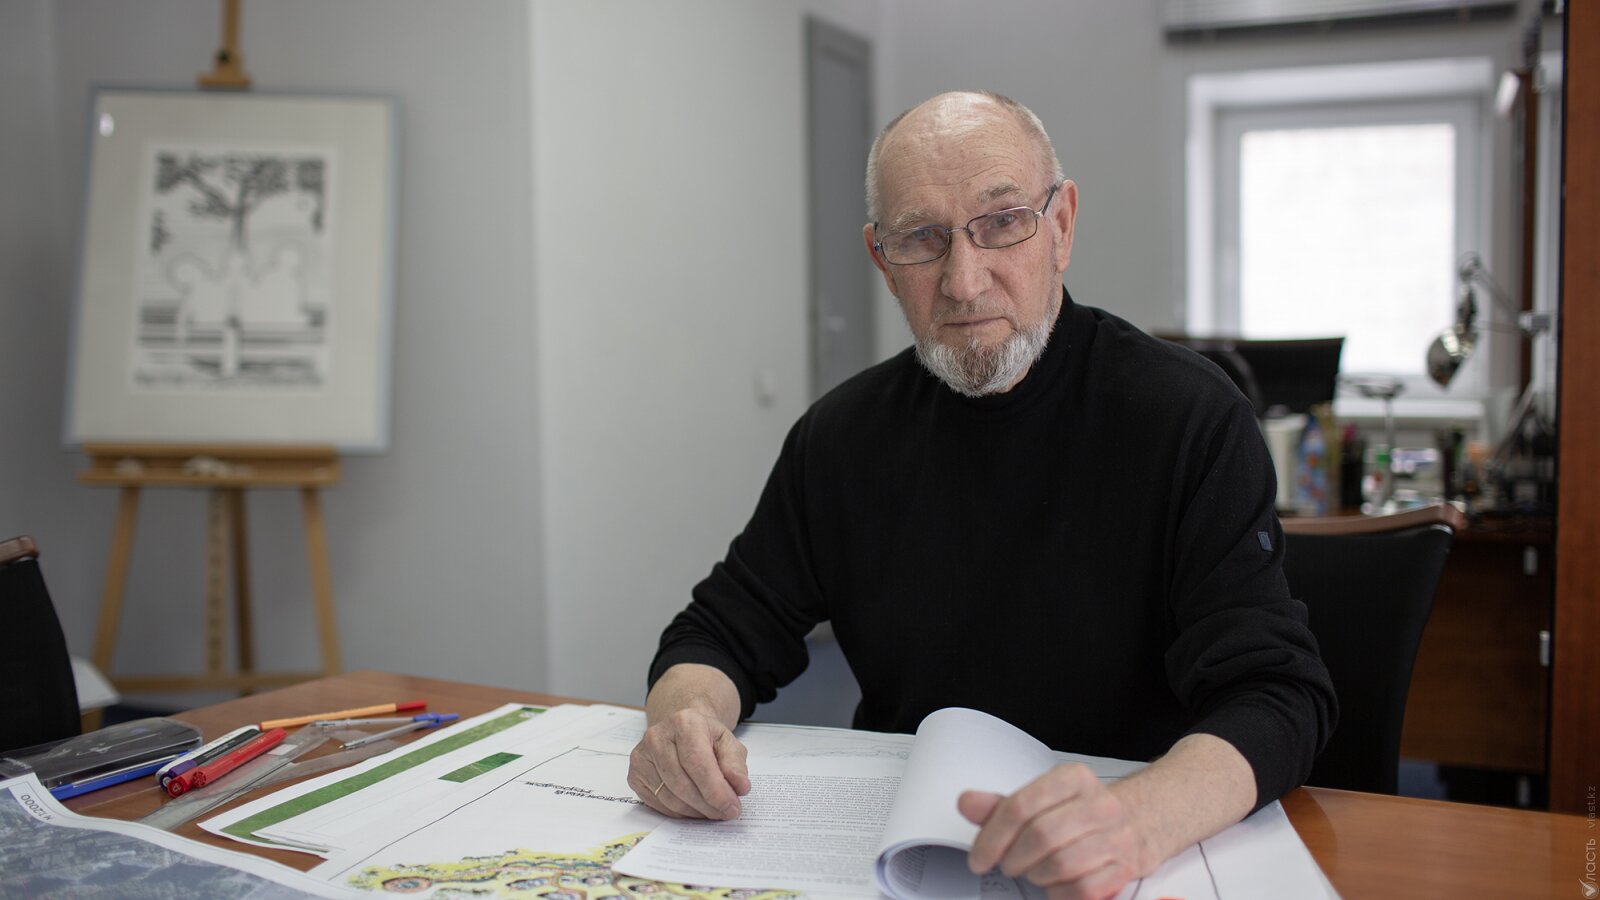 Василий Тоскин, архитектор: «Пришло время пересмотреть уровень ответственности тех, кто нам строит»